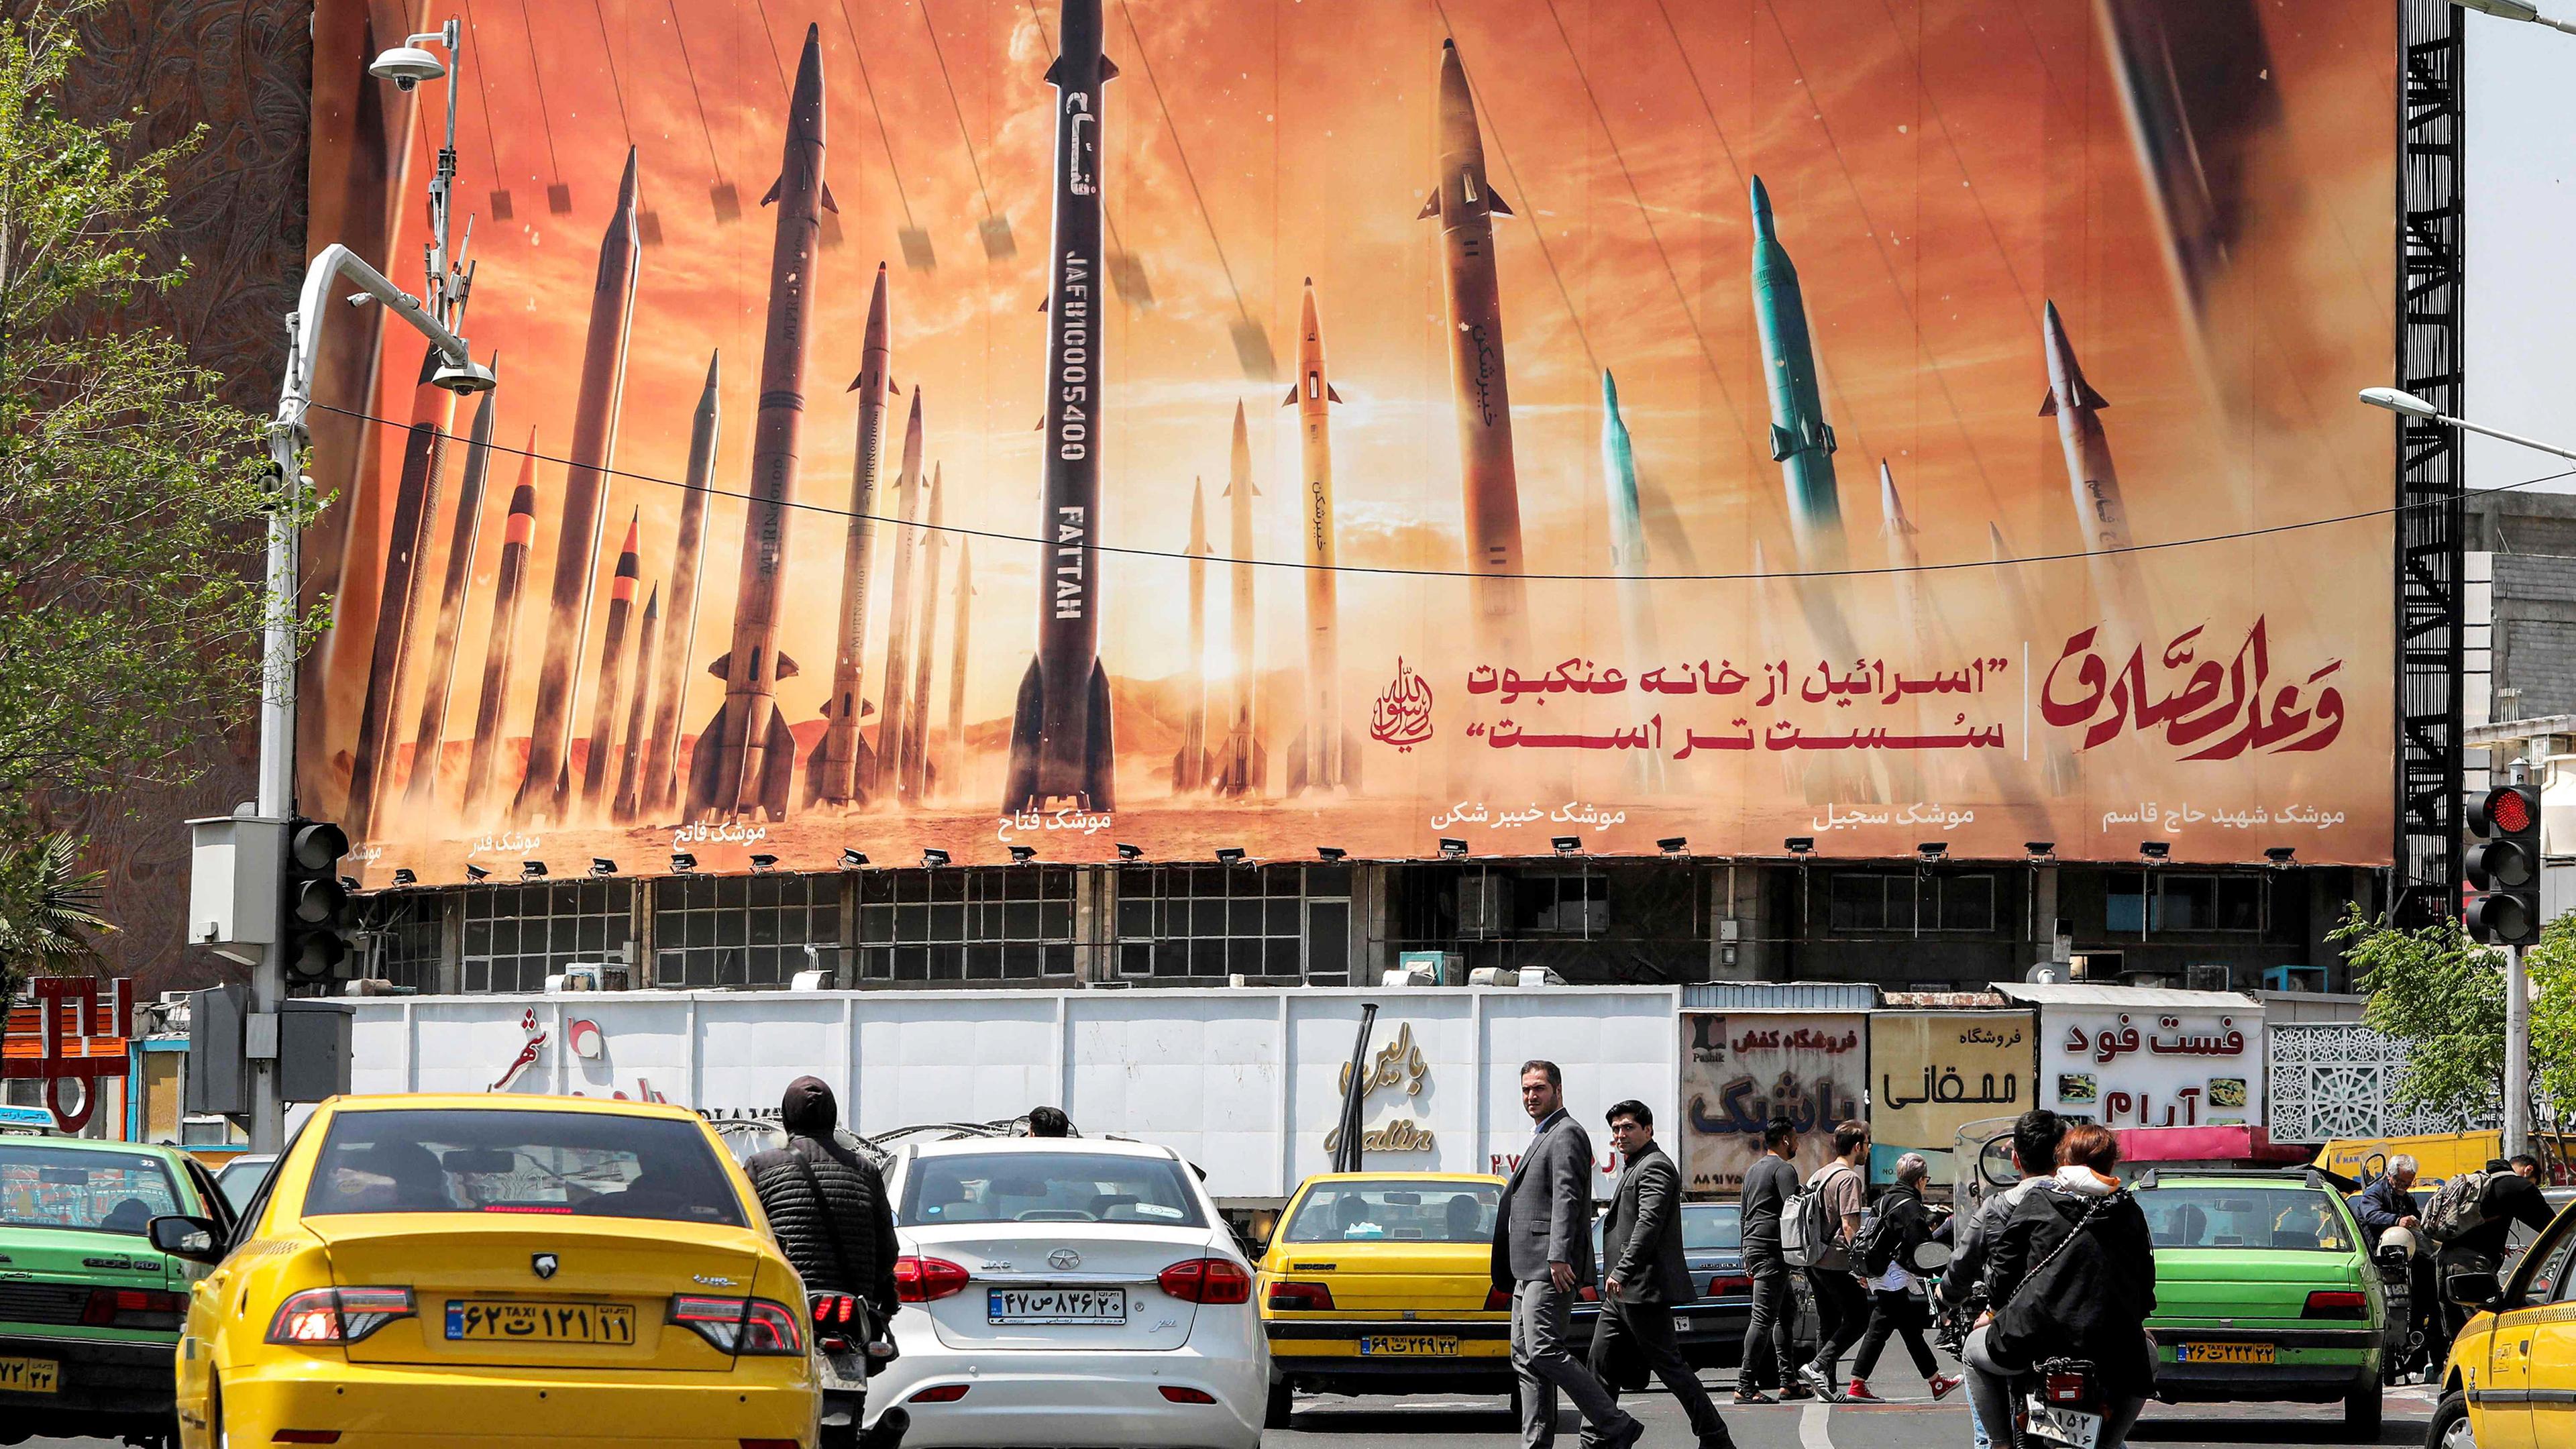 Raketen auf Plakat auf Platz in Teheran, Iran